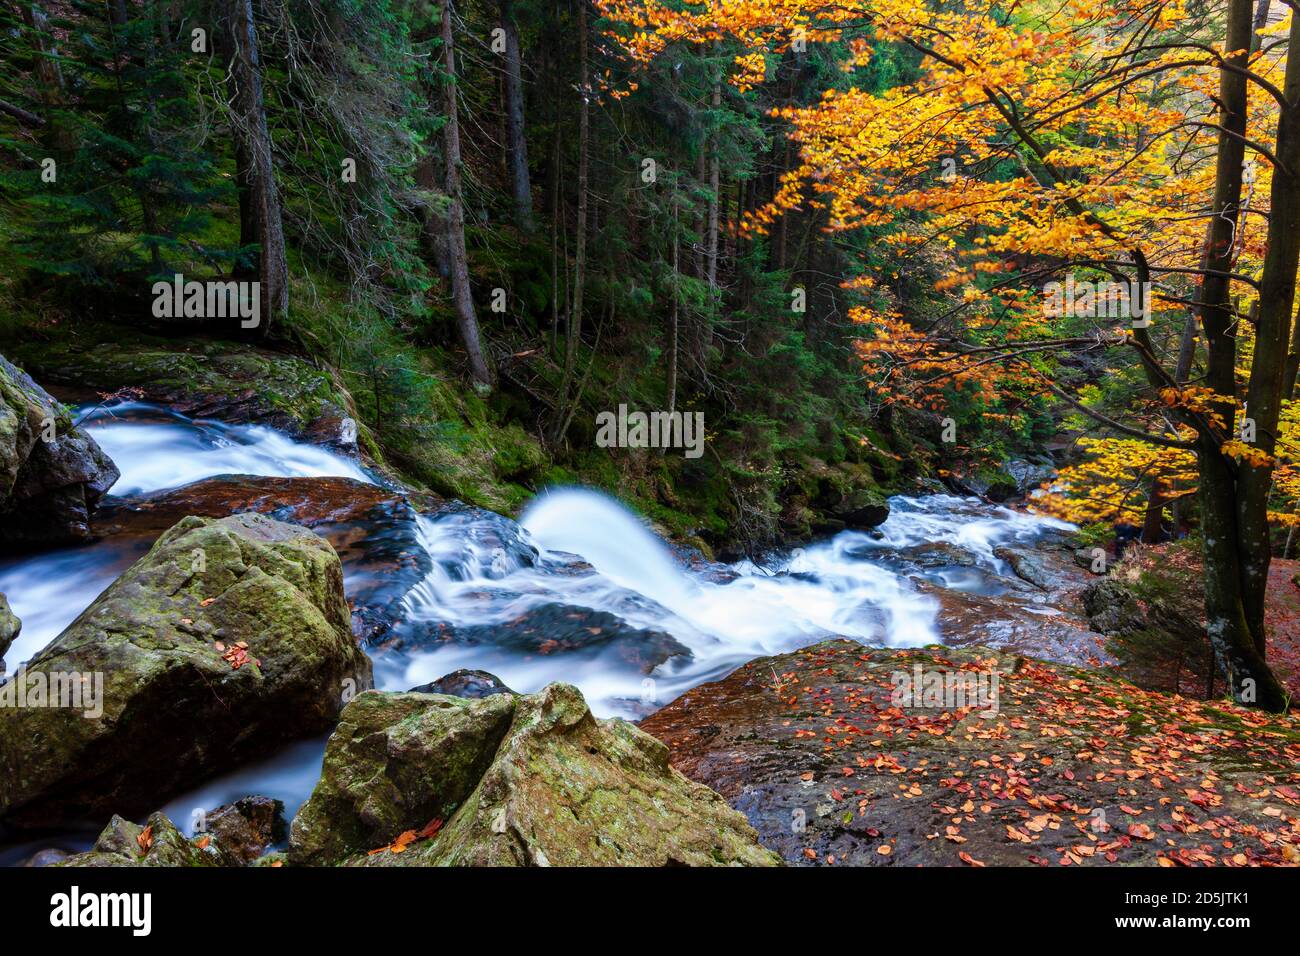 Rißlochfälle Bayerischer Wald im Herbst, Rißloch tombe dans le parc national de la forêt bavaroise à l'automne Banque D'Images